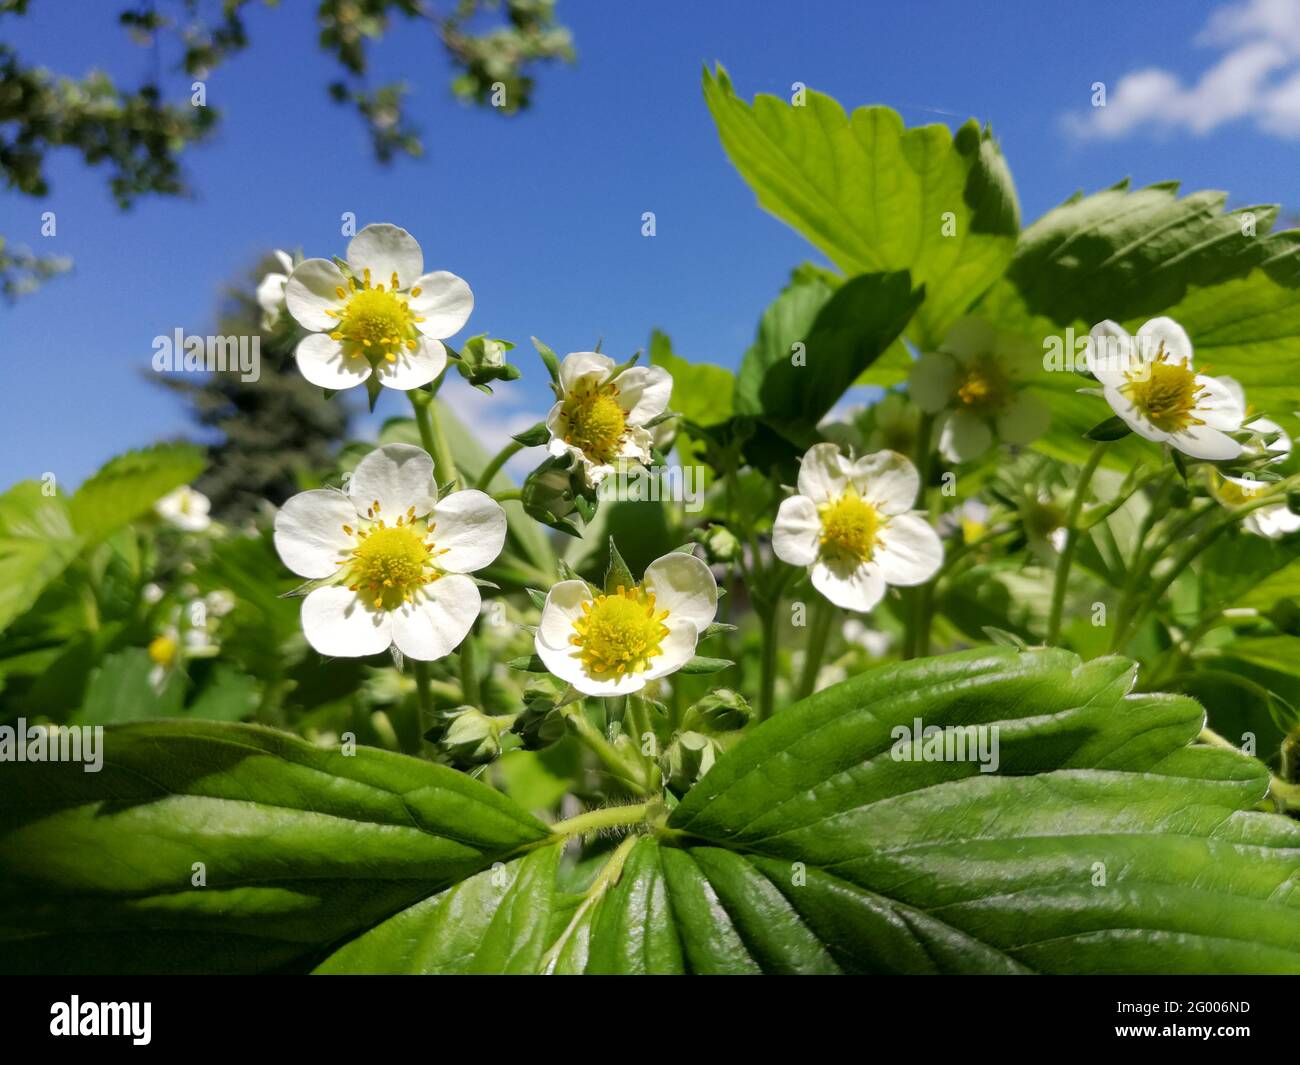 Pianta di fragola in fiore di fronte al cielo blu in primavera da un angolo molto basso Foto Stock